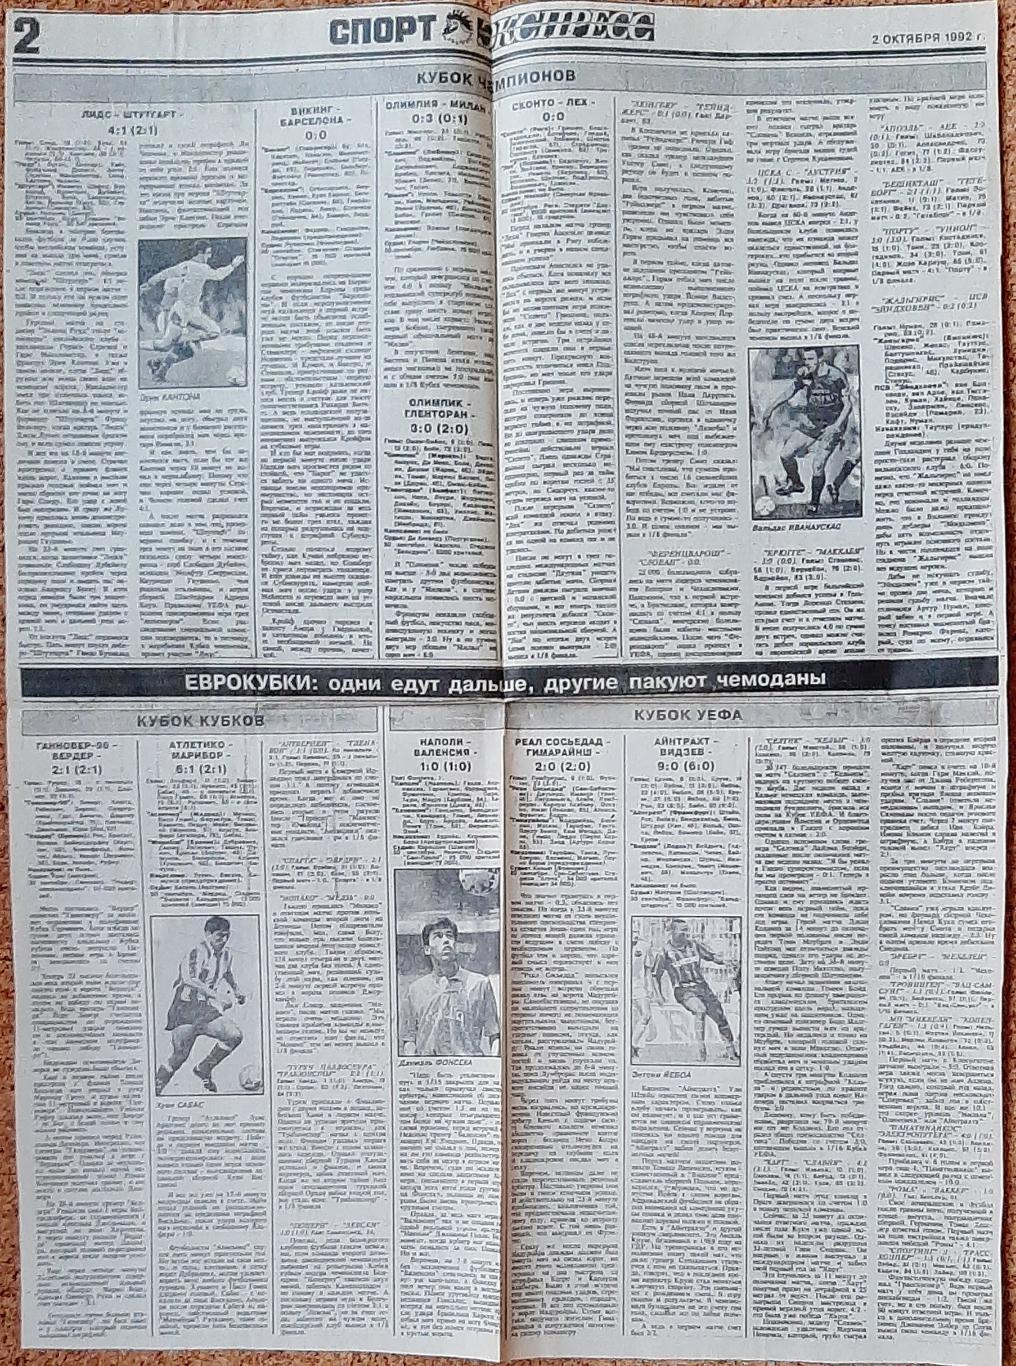 Вирізка з газети Спорт експрес #189 (2 жовтня 1992) 1